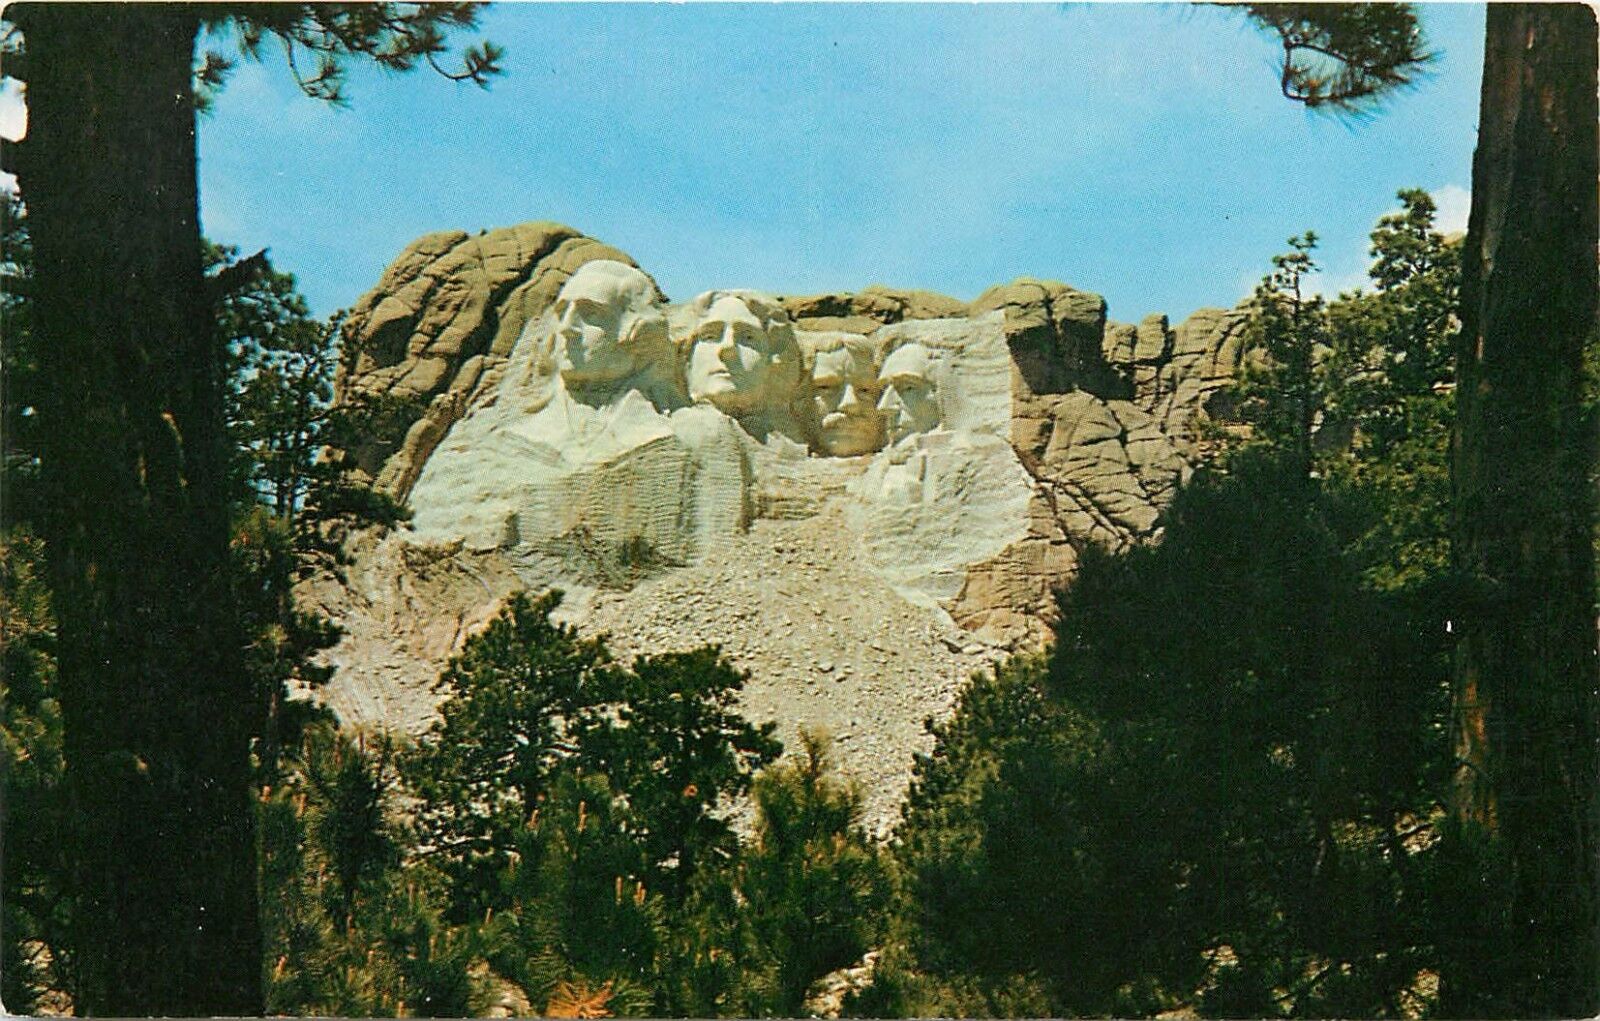 Mount Rushmore National Memorial, Black Hills, South Dakota Postcard